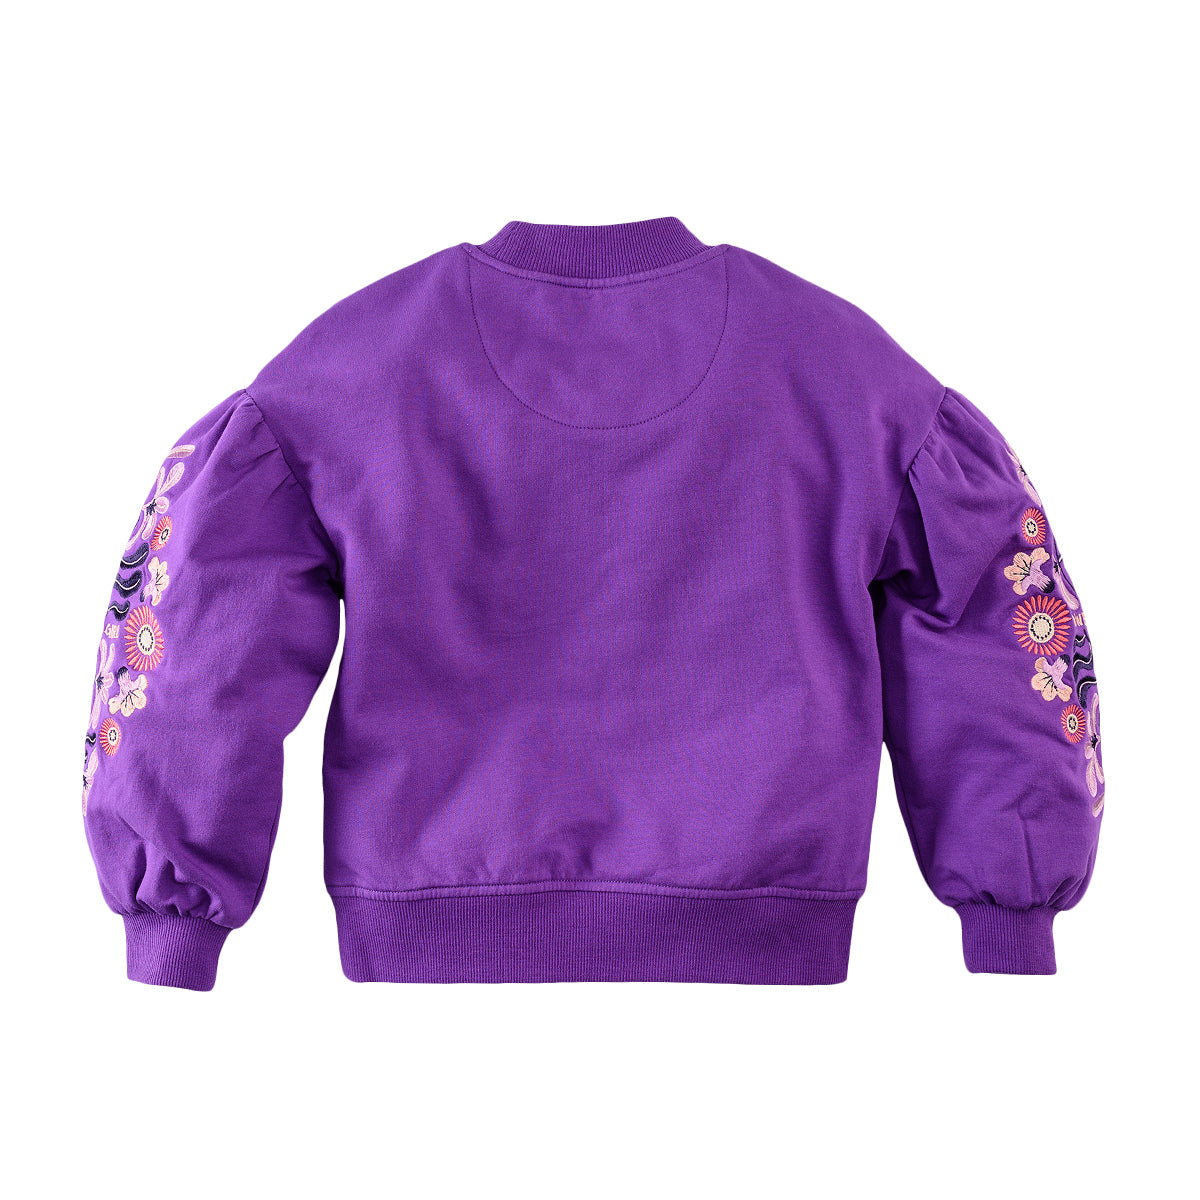 Meisjes Sweater Elvire van Z8 in de kleur Electric violet in maat 140-146.